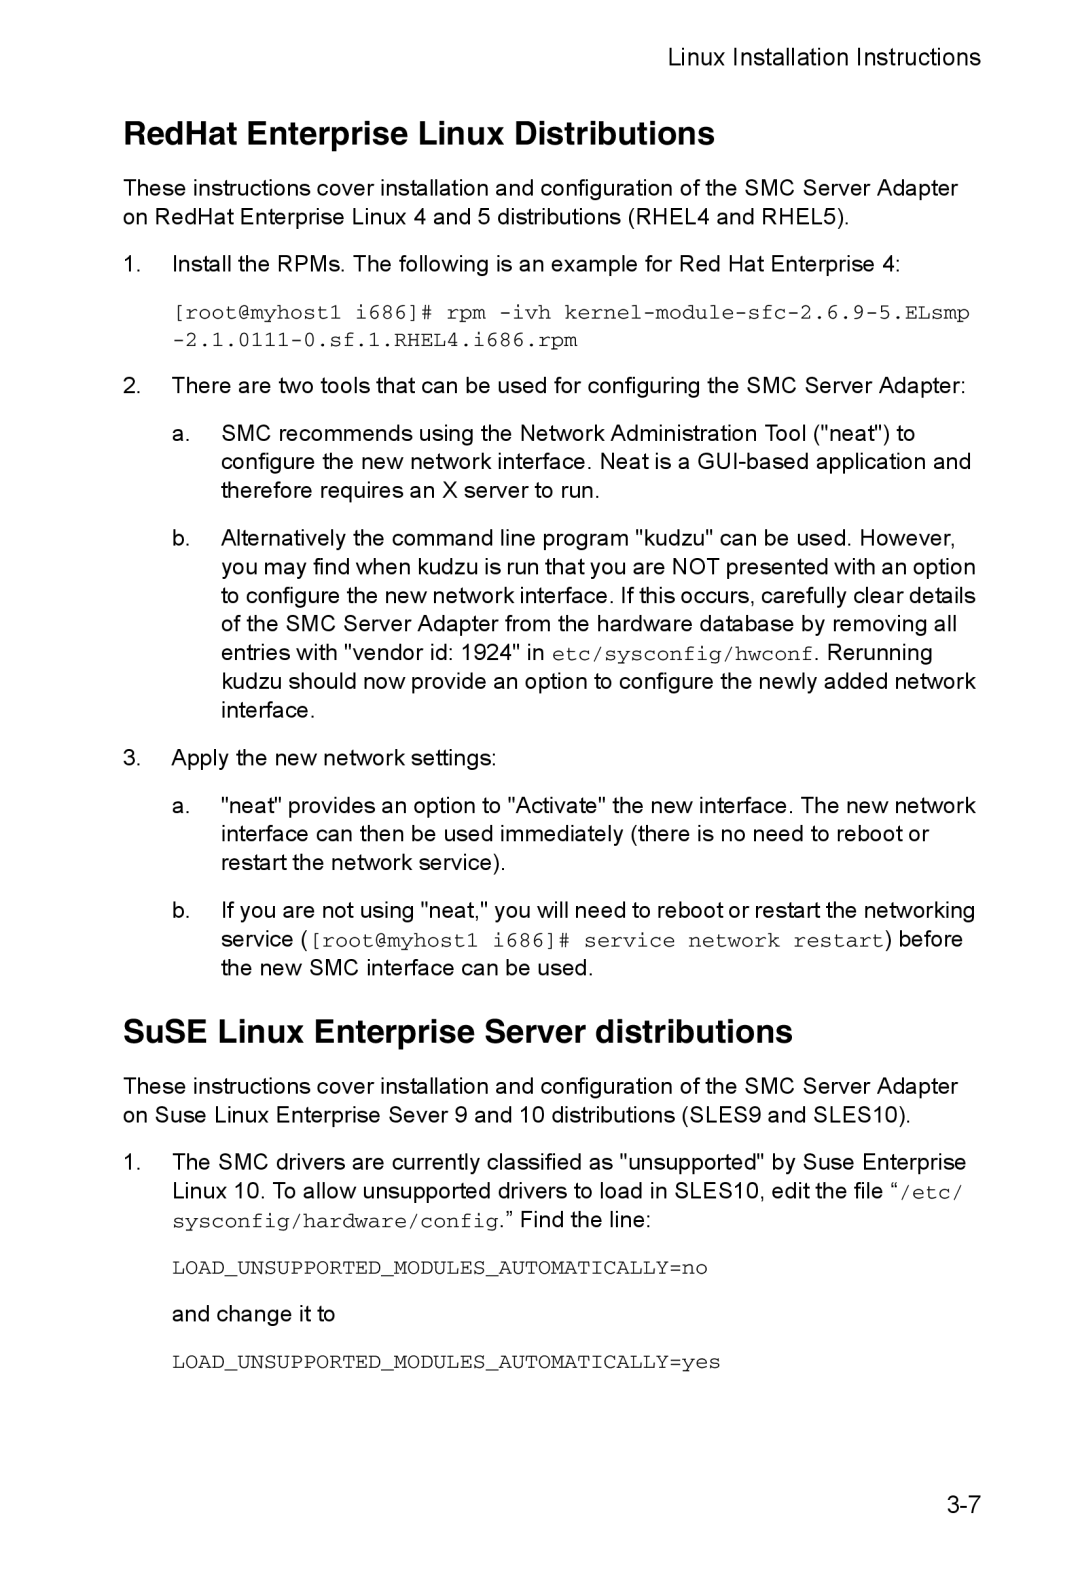 SMC Networks SMC10GPCIe-XFP manual RedHat Enterprise Linux Distributions, SuSE Linux Enterprise Server distributions 